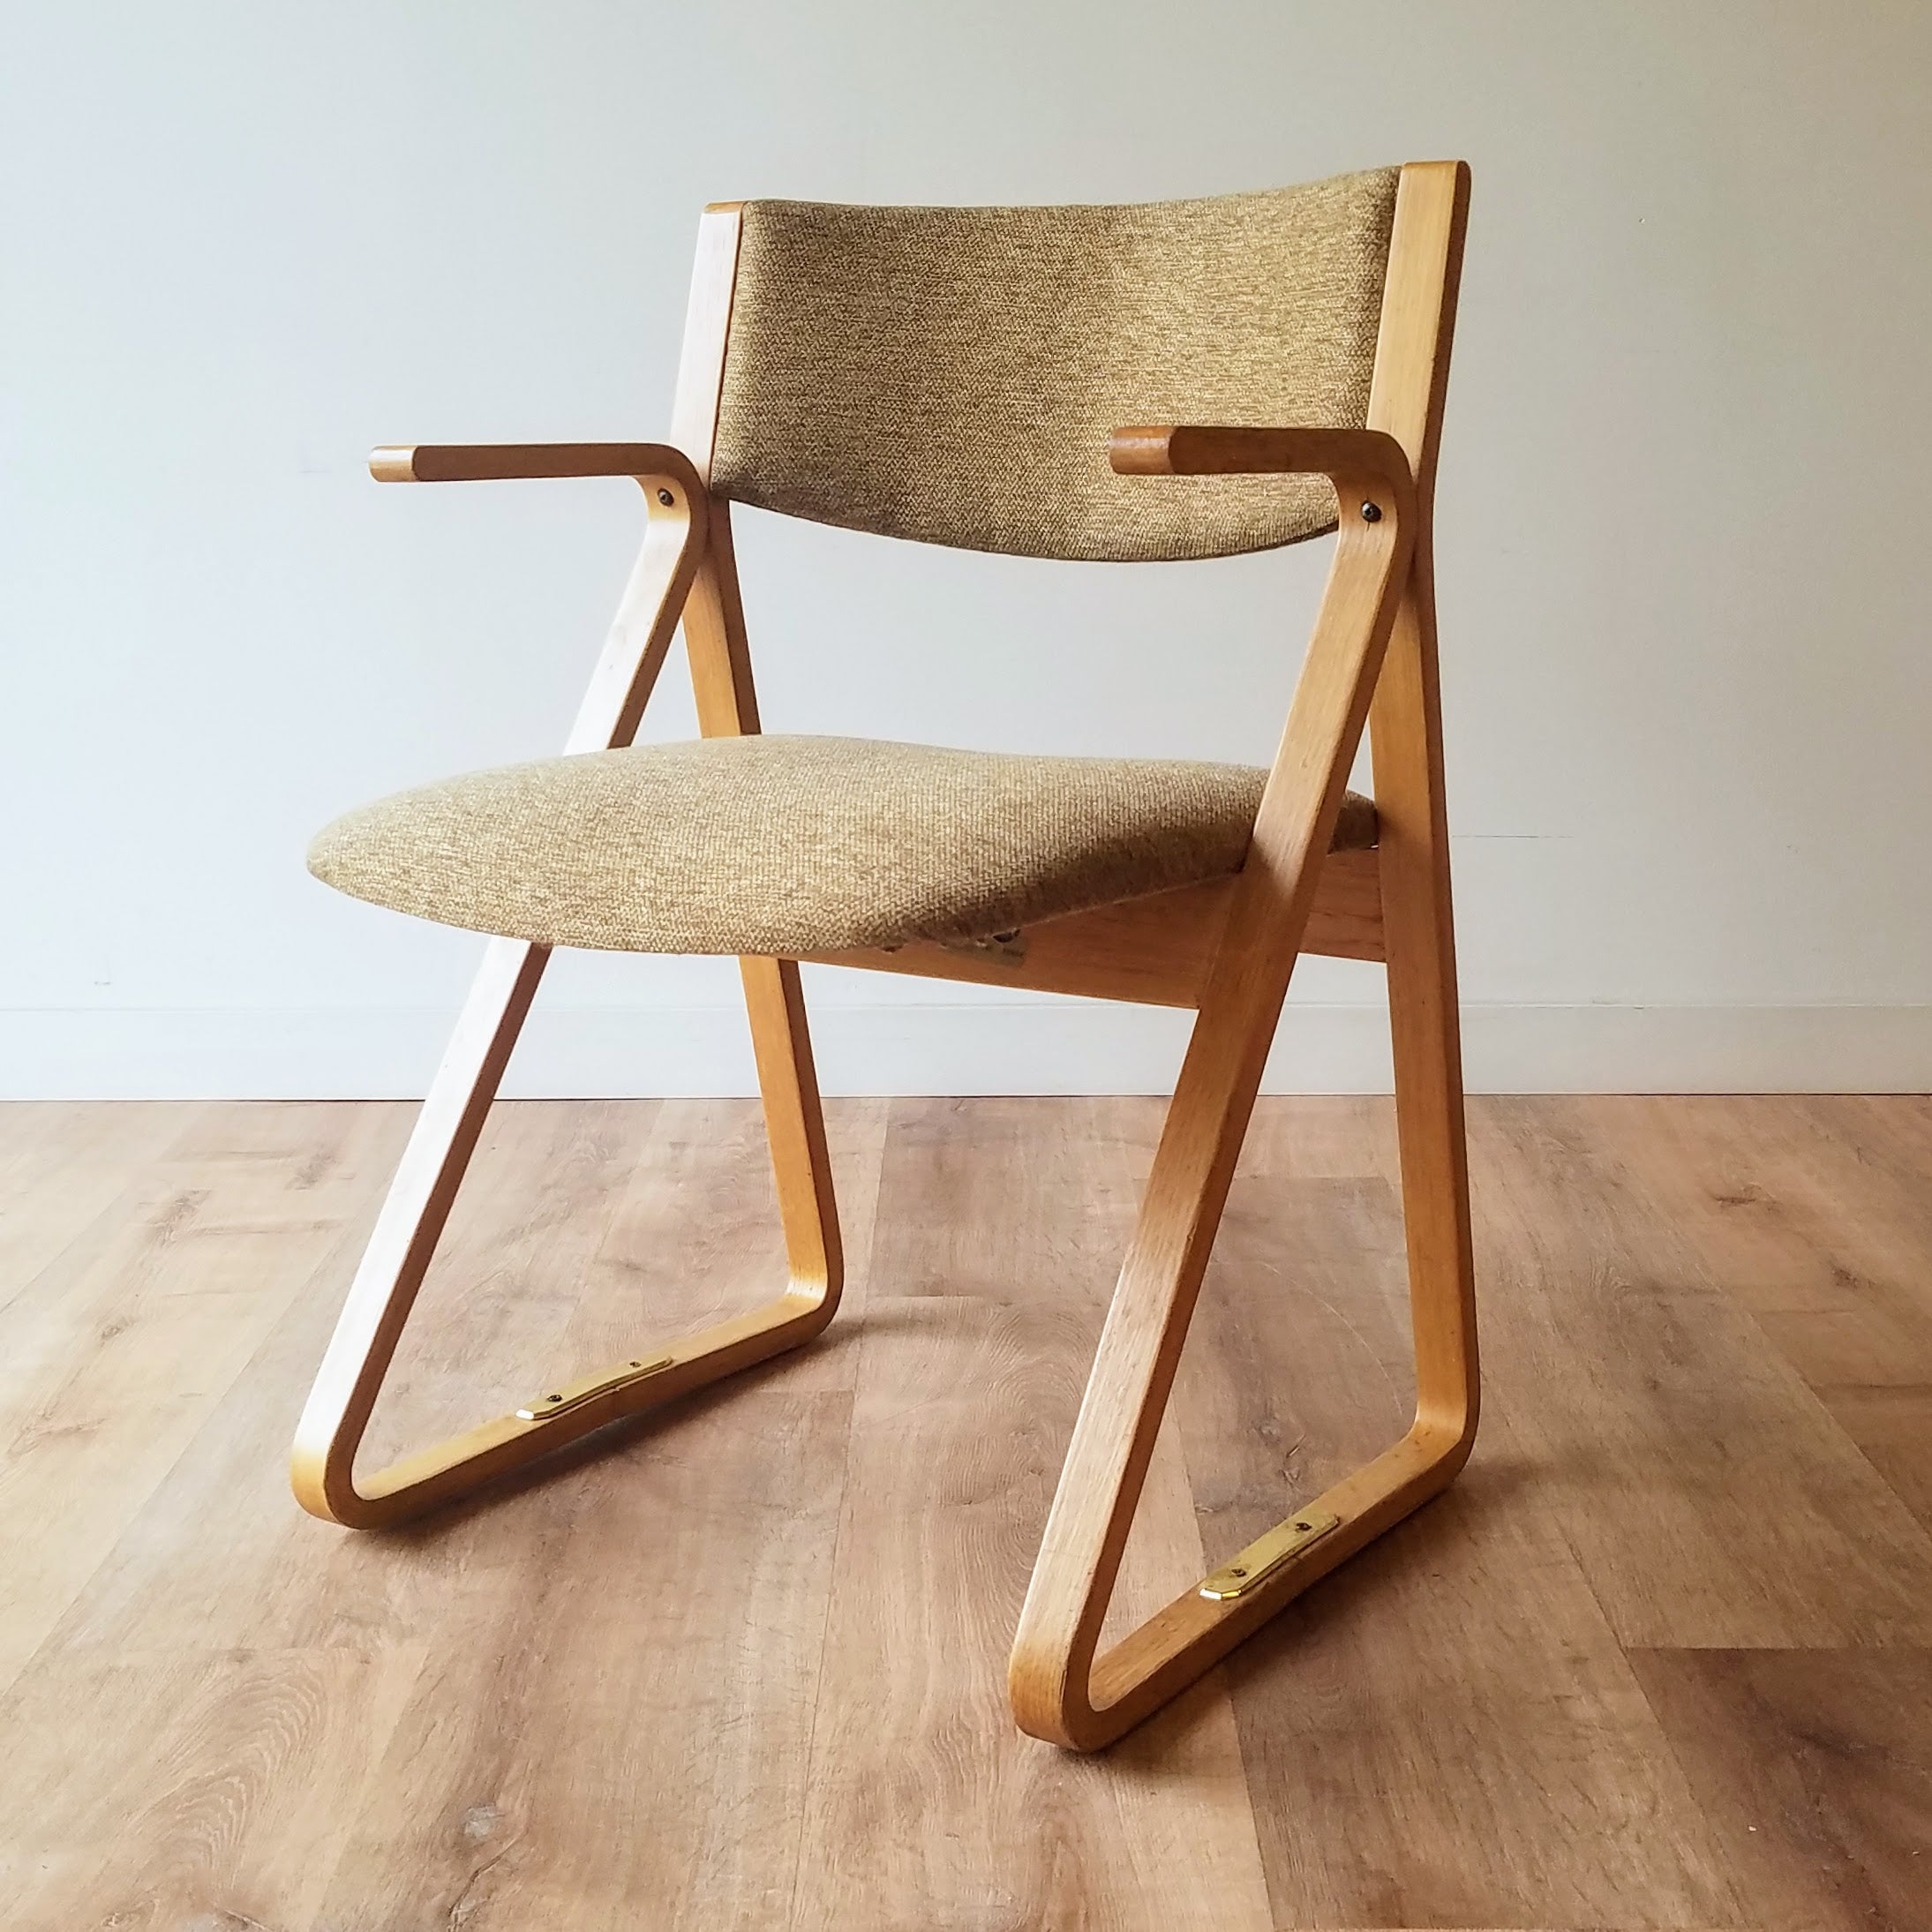 Robert DeFuccio 'Triangle' Chair